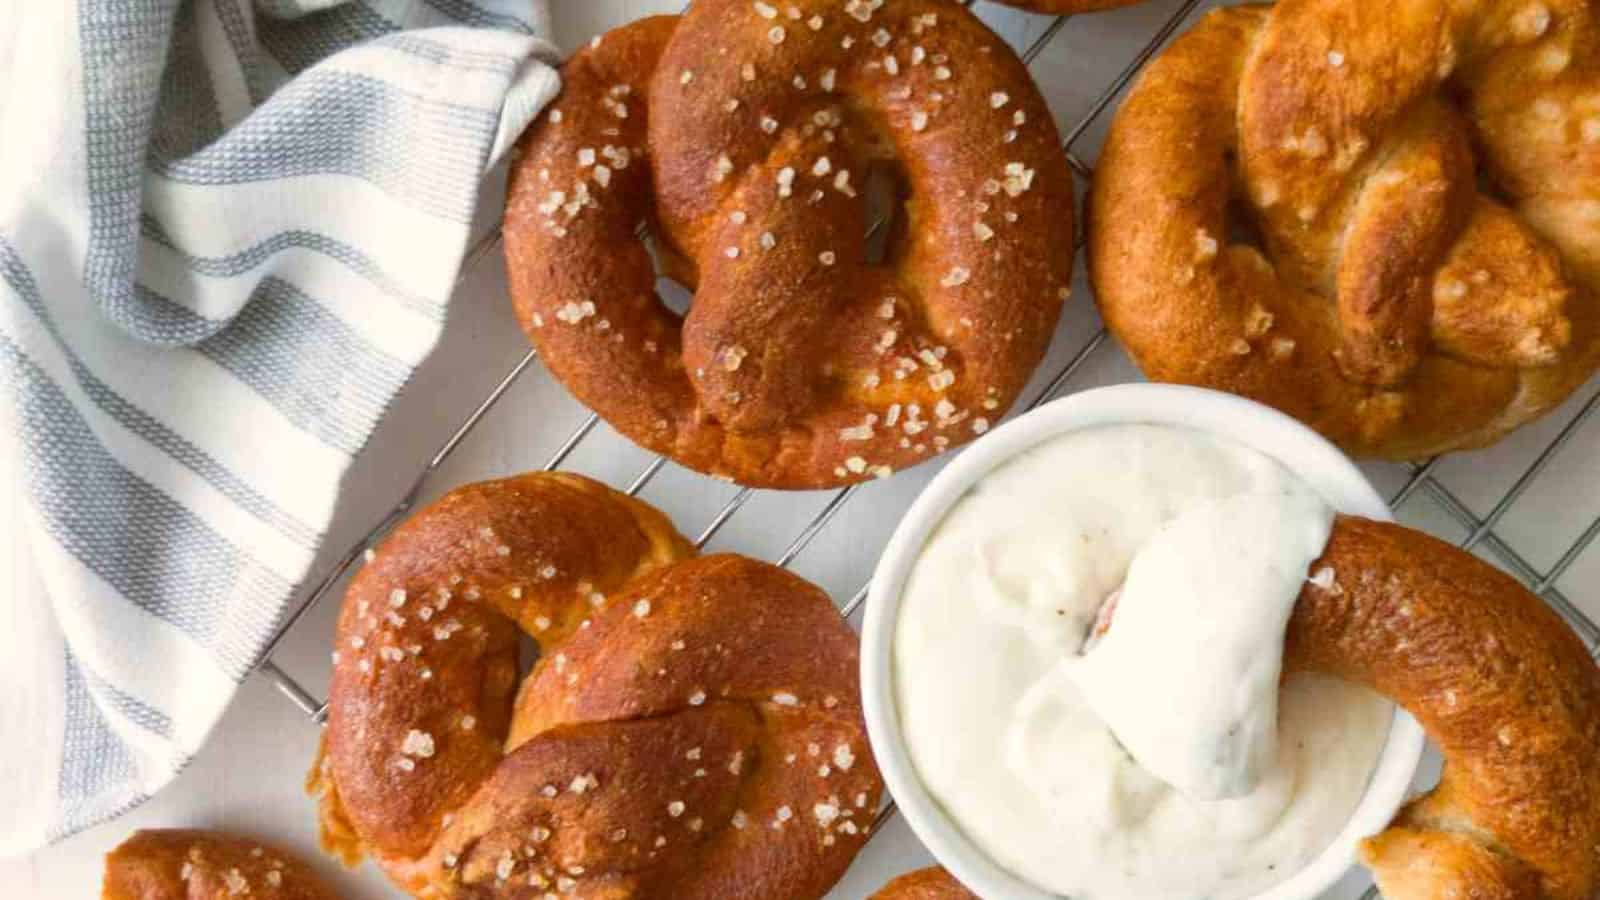 A pretzel and a bowl of dip.